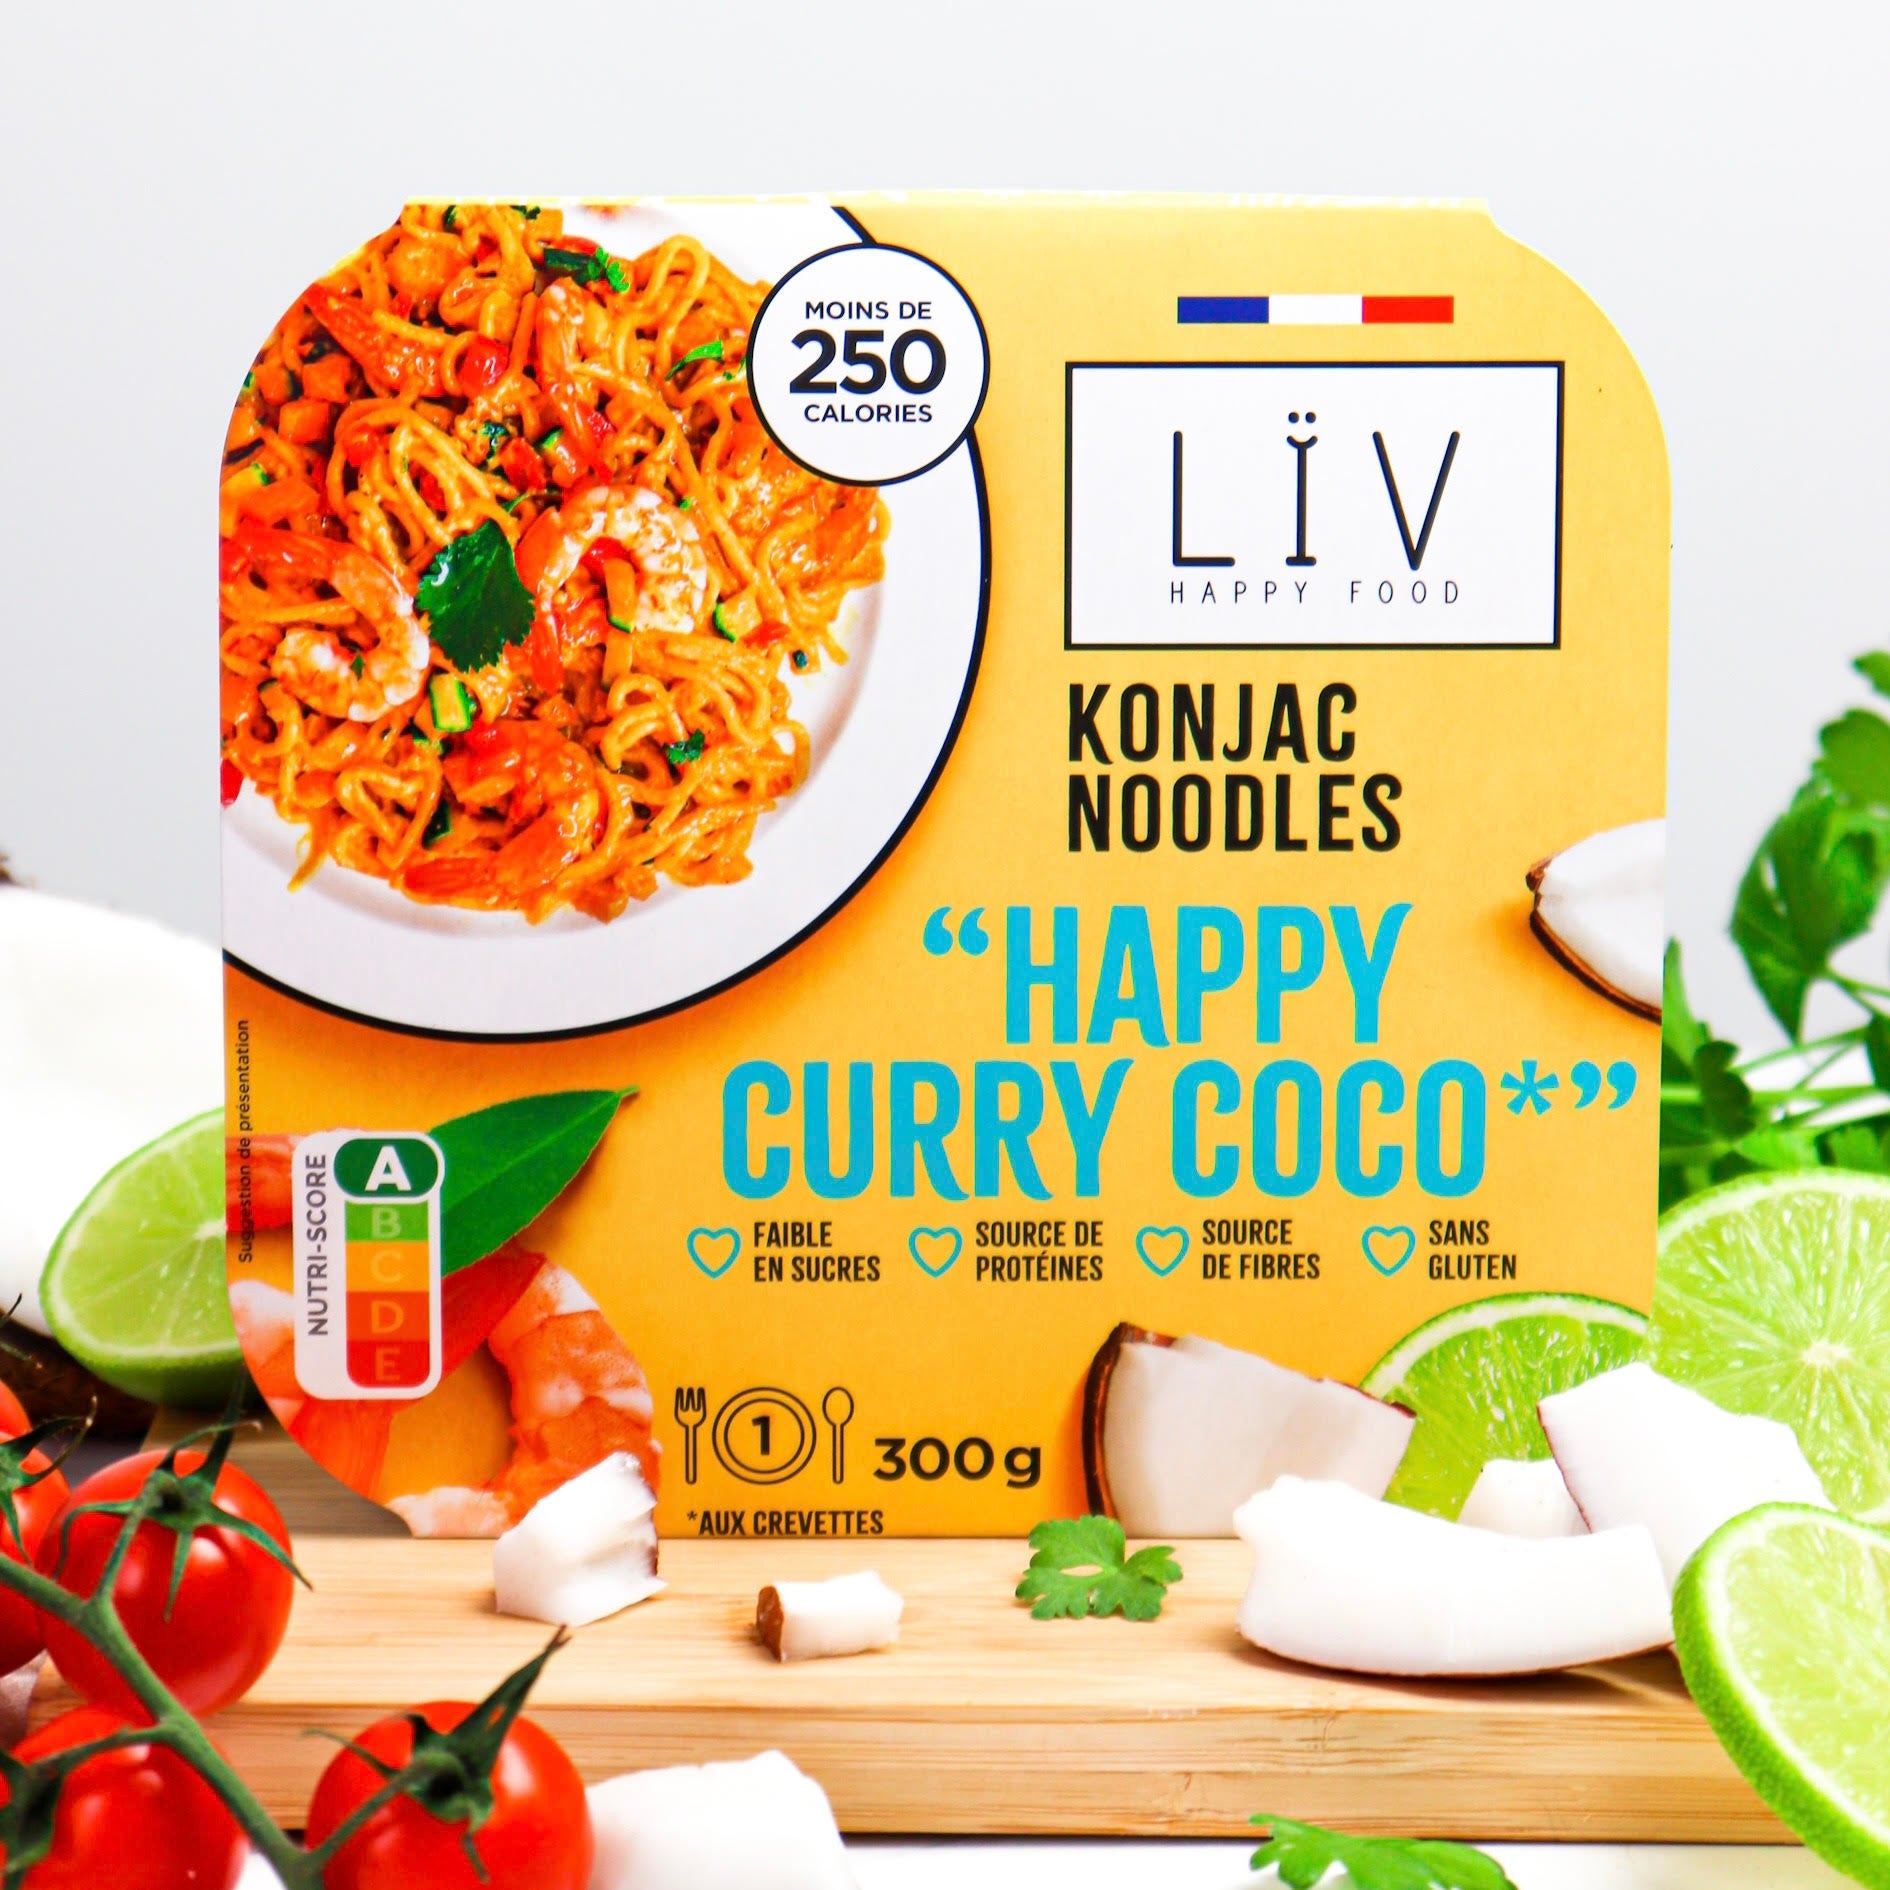 Sticky rice konjac & riz - Lïv happy food